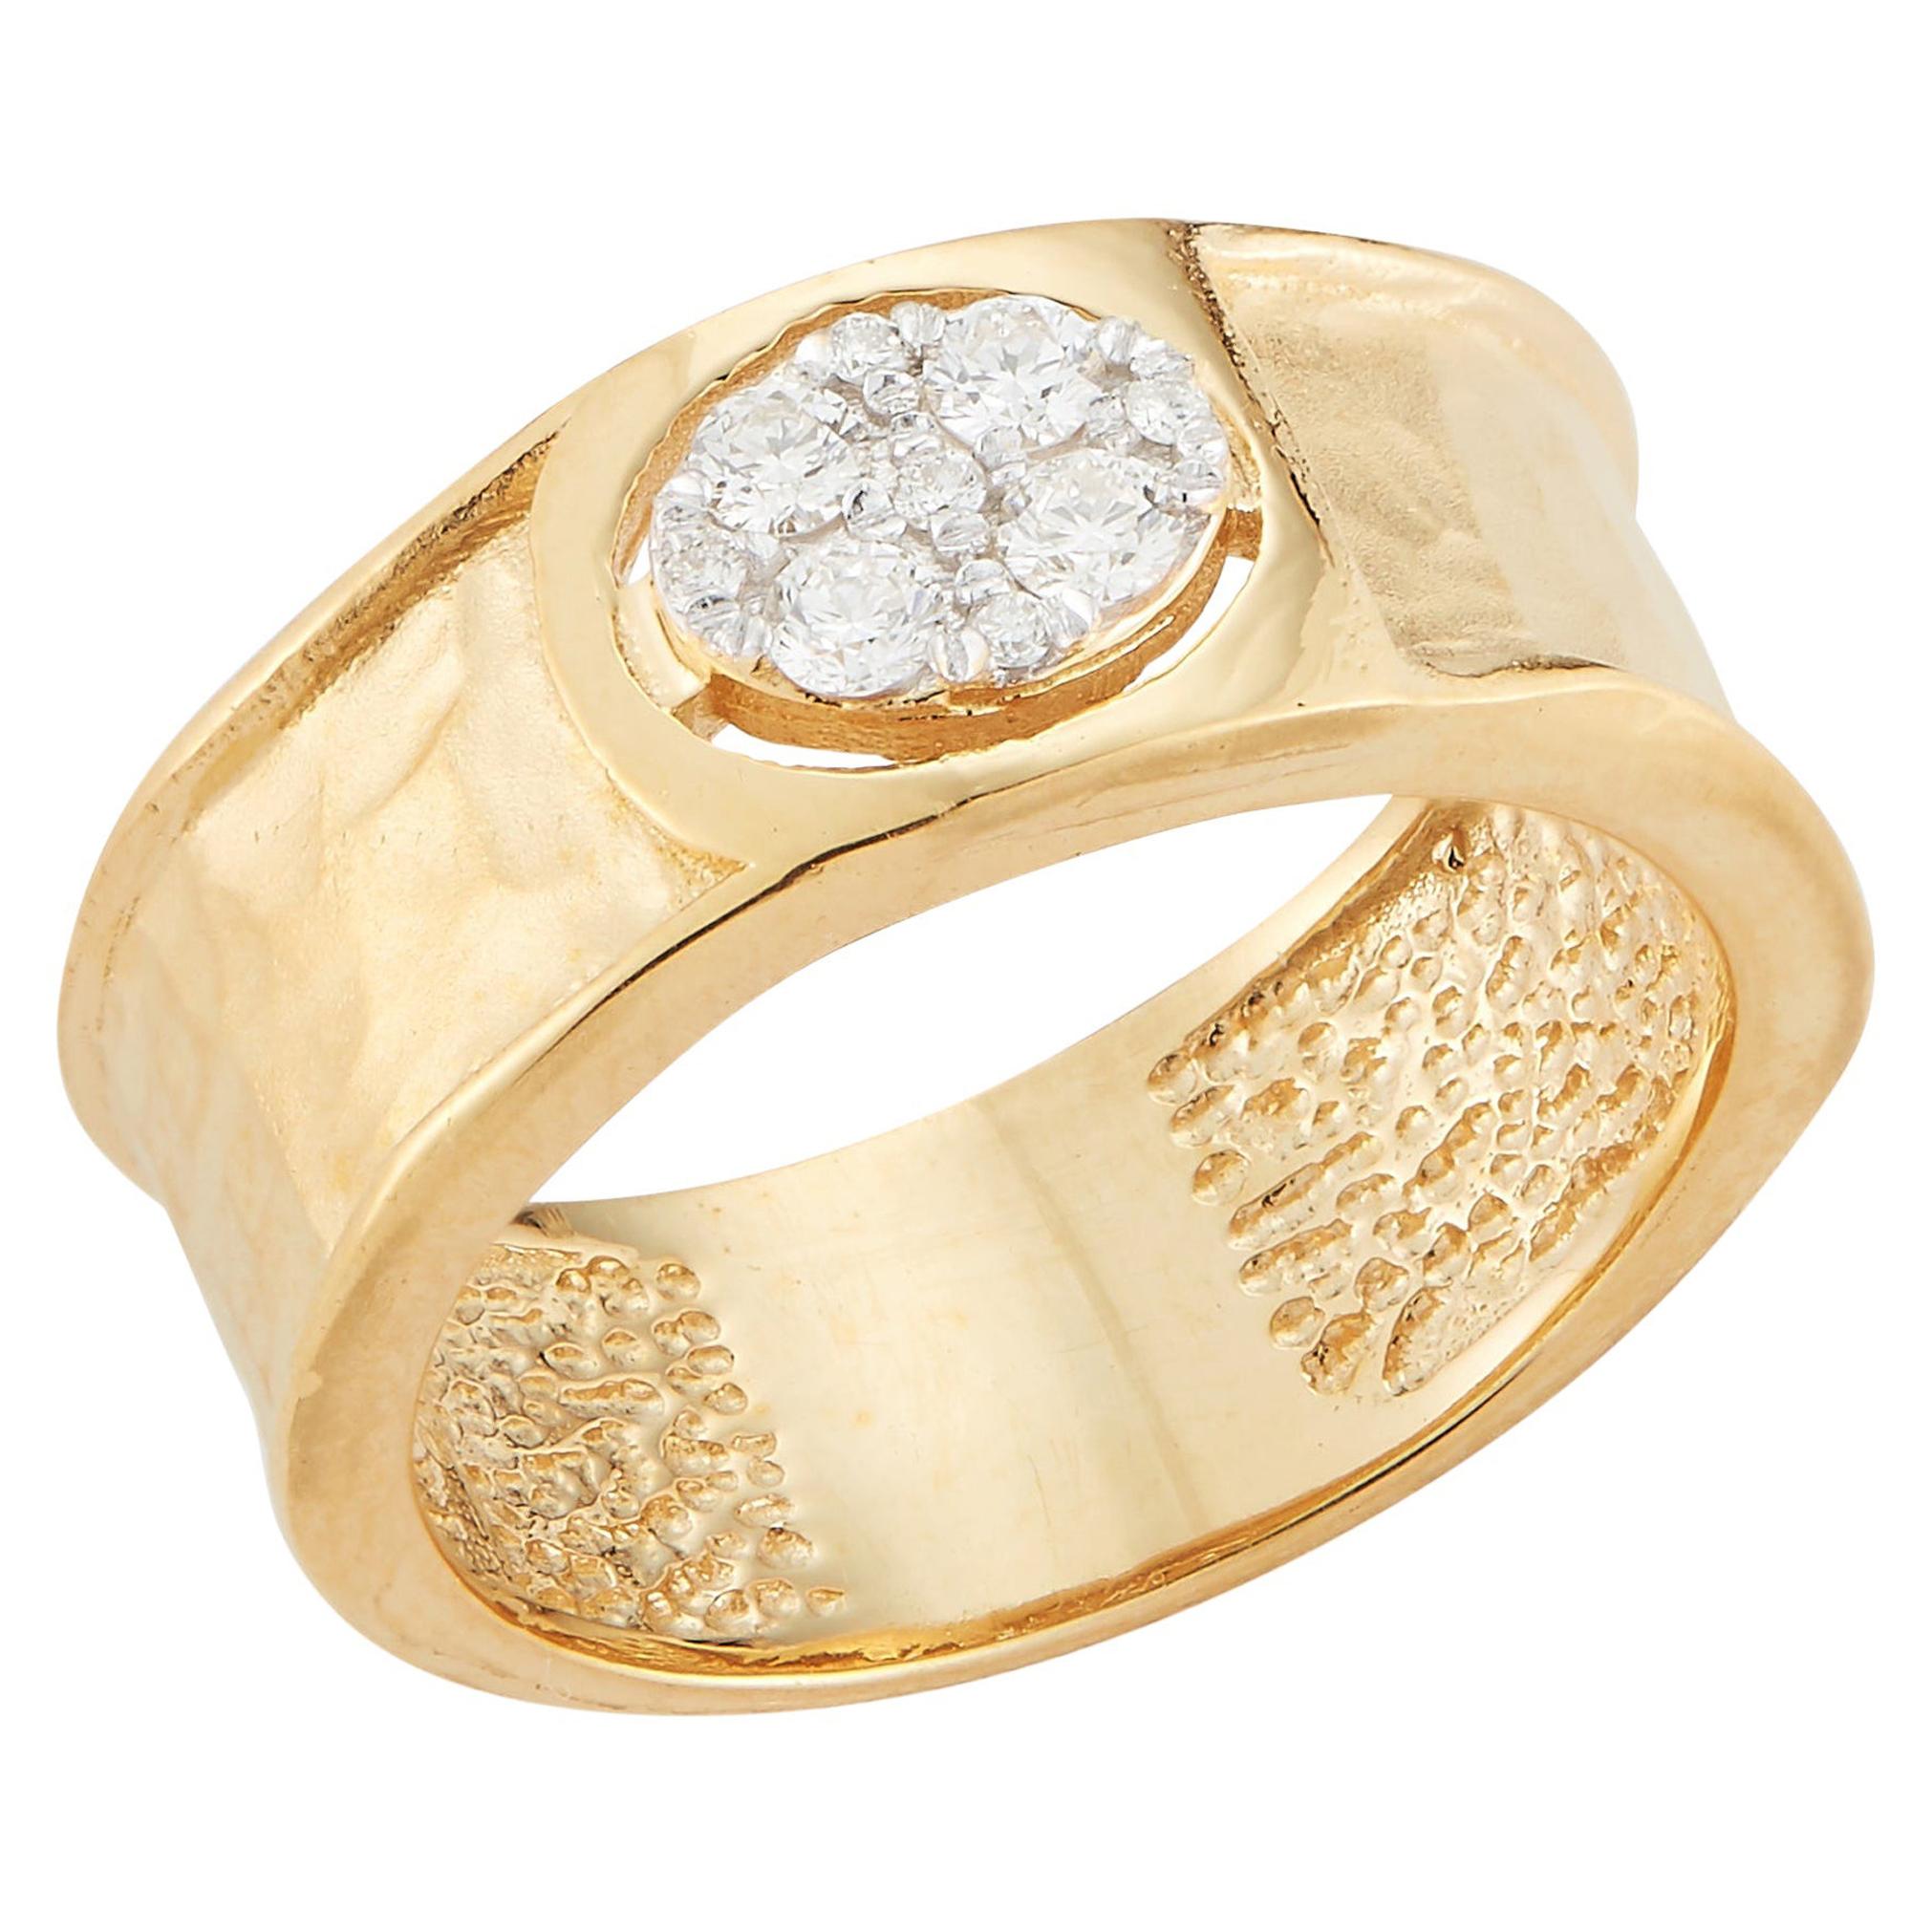 Handgefertigter gehämmerter 14 Karat Gelbgold-Ring mit ovalem Diamantmotiv